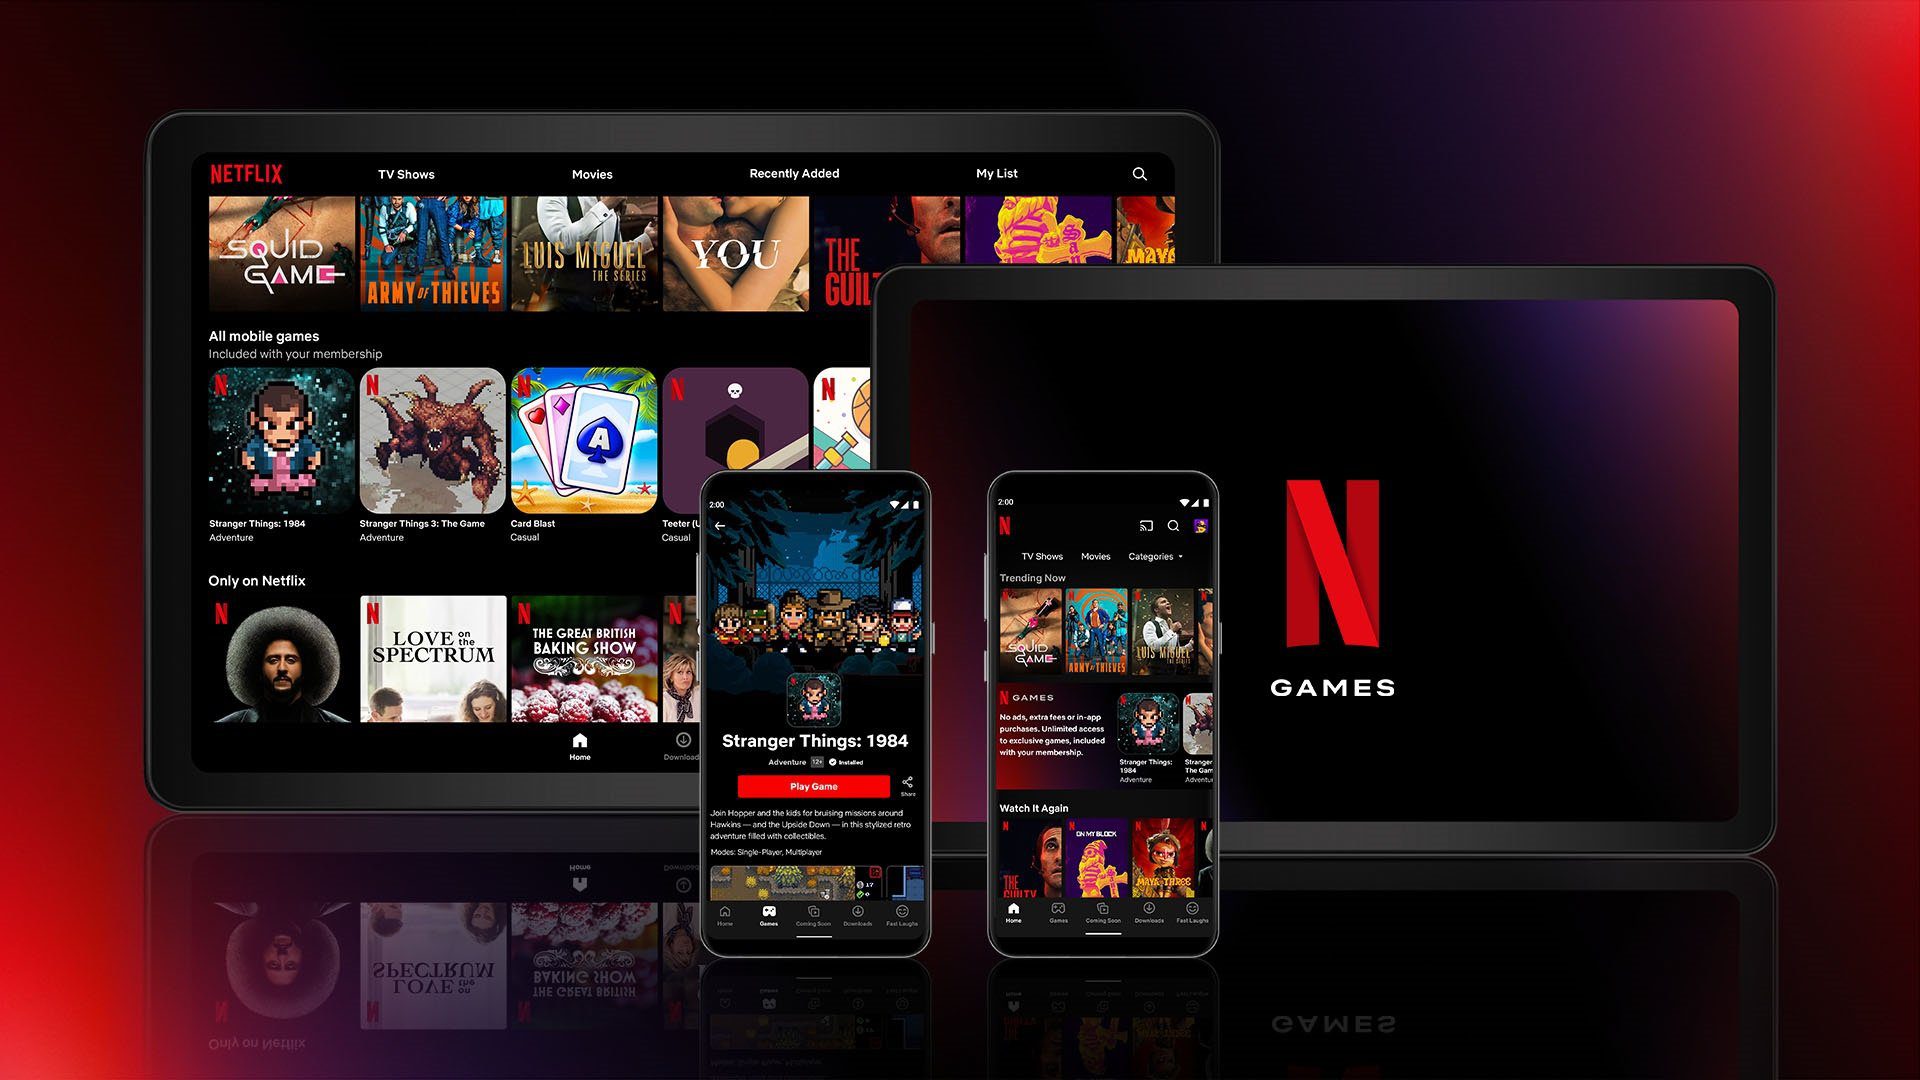 Netflix-Spiele stehen jedem ohne Aufpreis zur Verfügung. schon fast 54